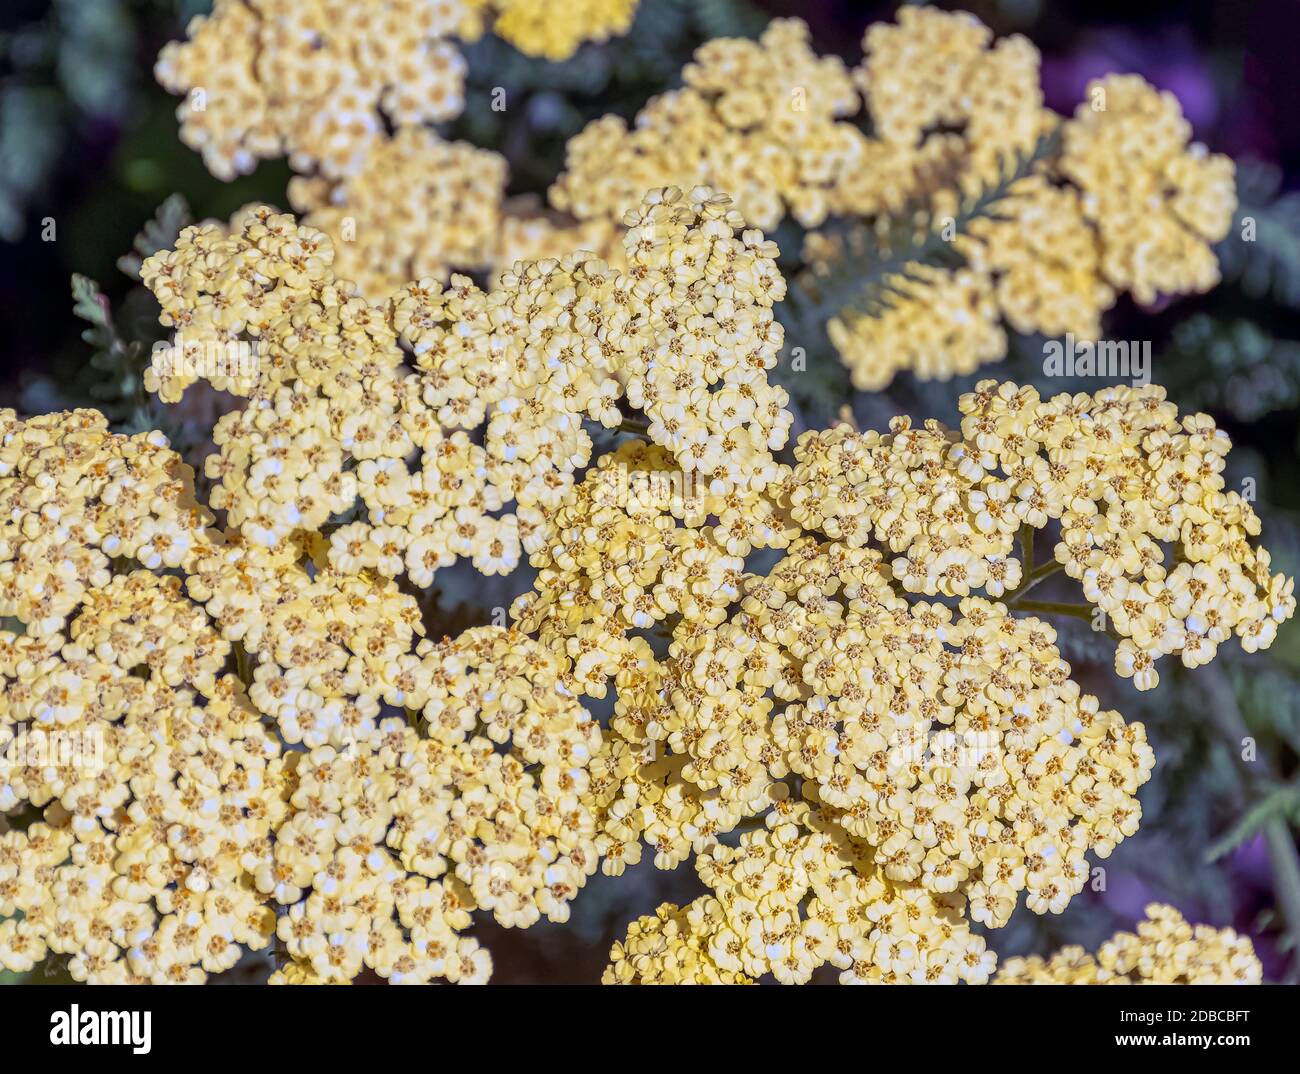 Achillea filipendulina, bekannt als fernleaf Schafgarbe, Milfoil oder Nasenblut - asiatische Arten der blühenden Pflanze in der Familie der Sonnenblumen Stockfoto